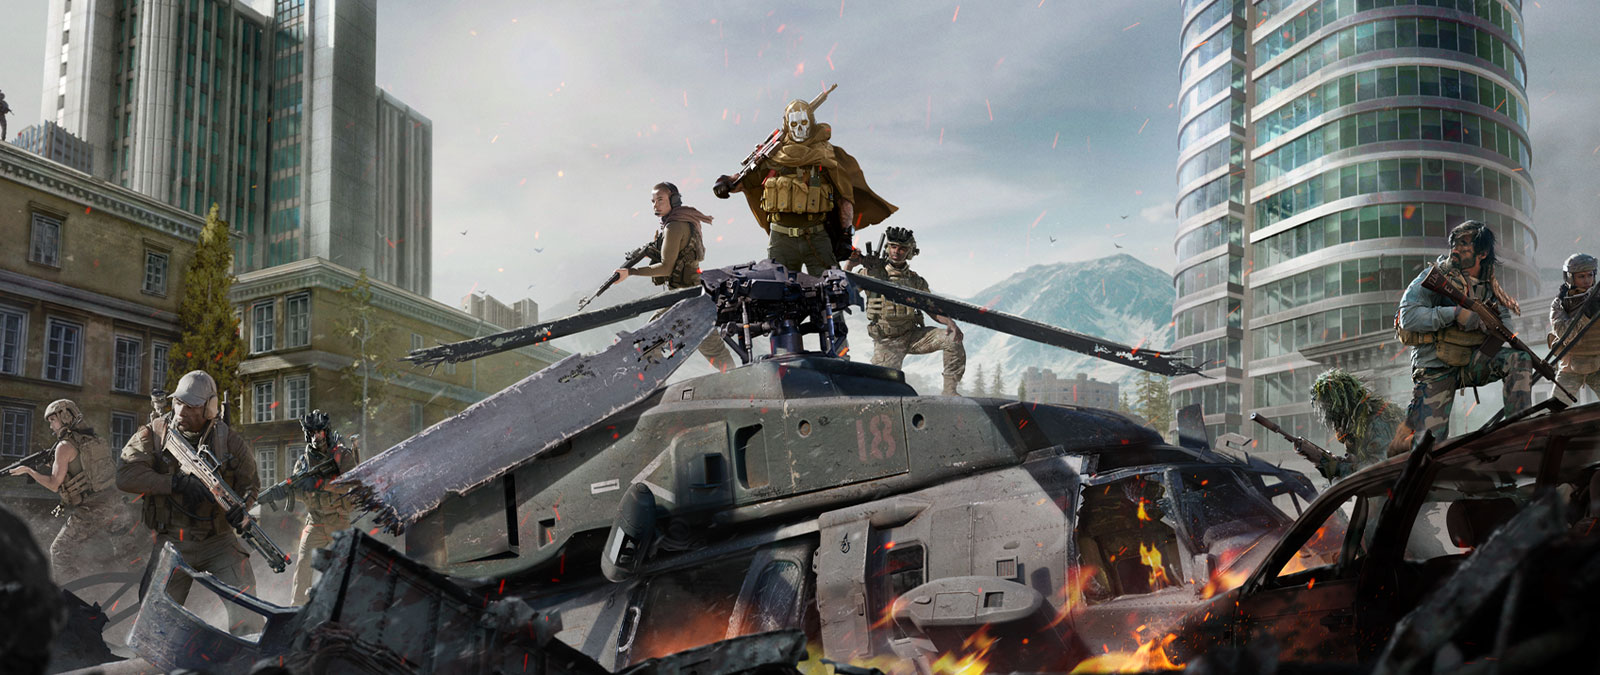 Ghost uit Call of Duty: Modern Warfare in schedelmasker en sluipschutteruitrusting bovenop een neergestorte helikopter met verschillende andere personages